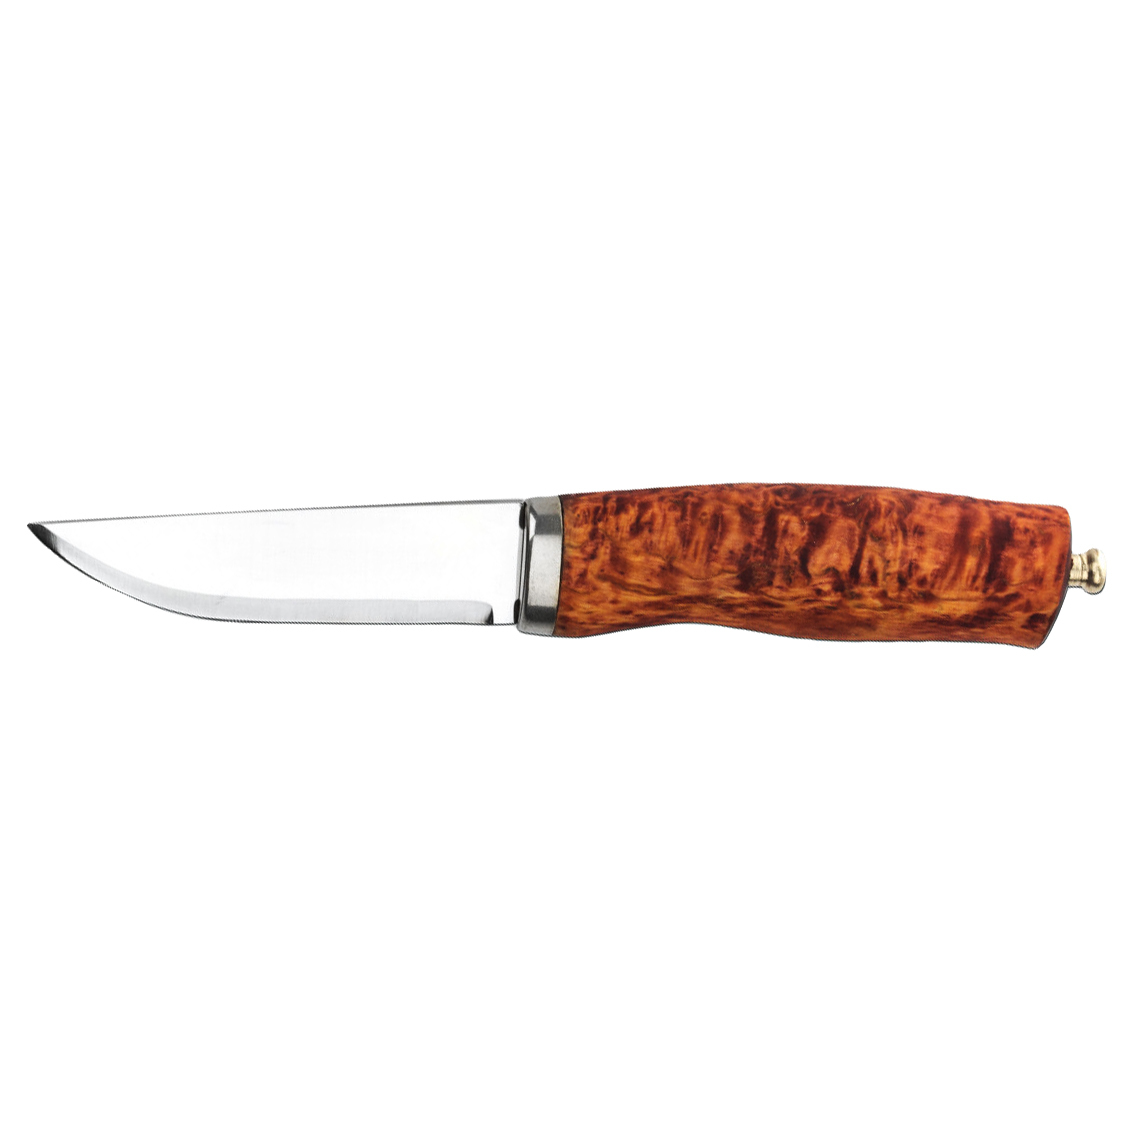 Нож туристический Brusletto Norgeskniven, сталь Sandvik 12C27, рукоять карельская береза от Ножиков